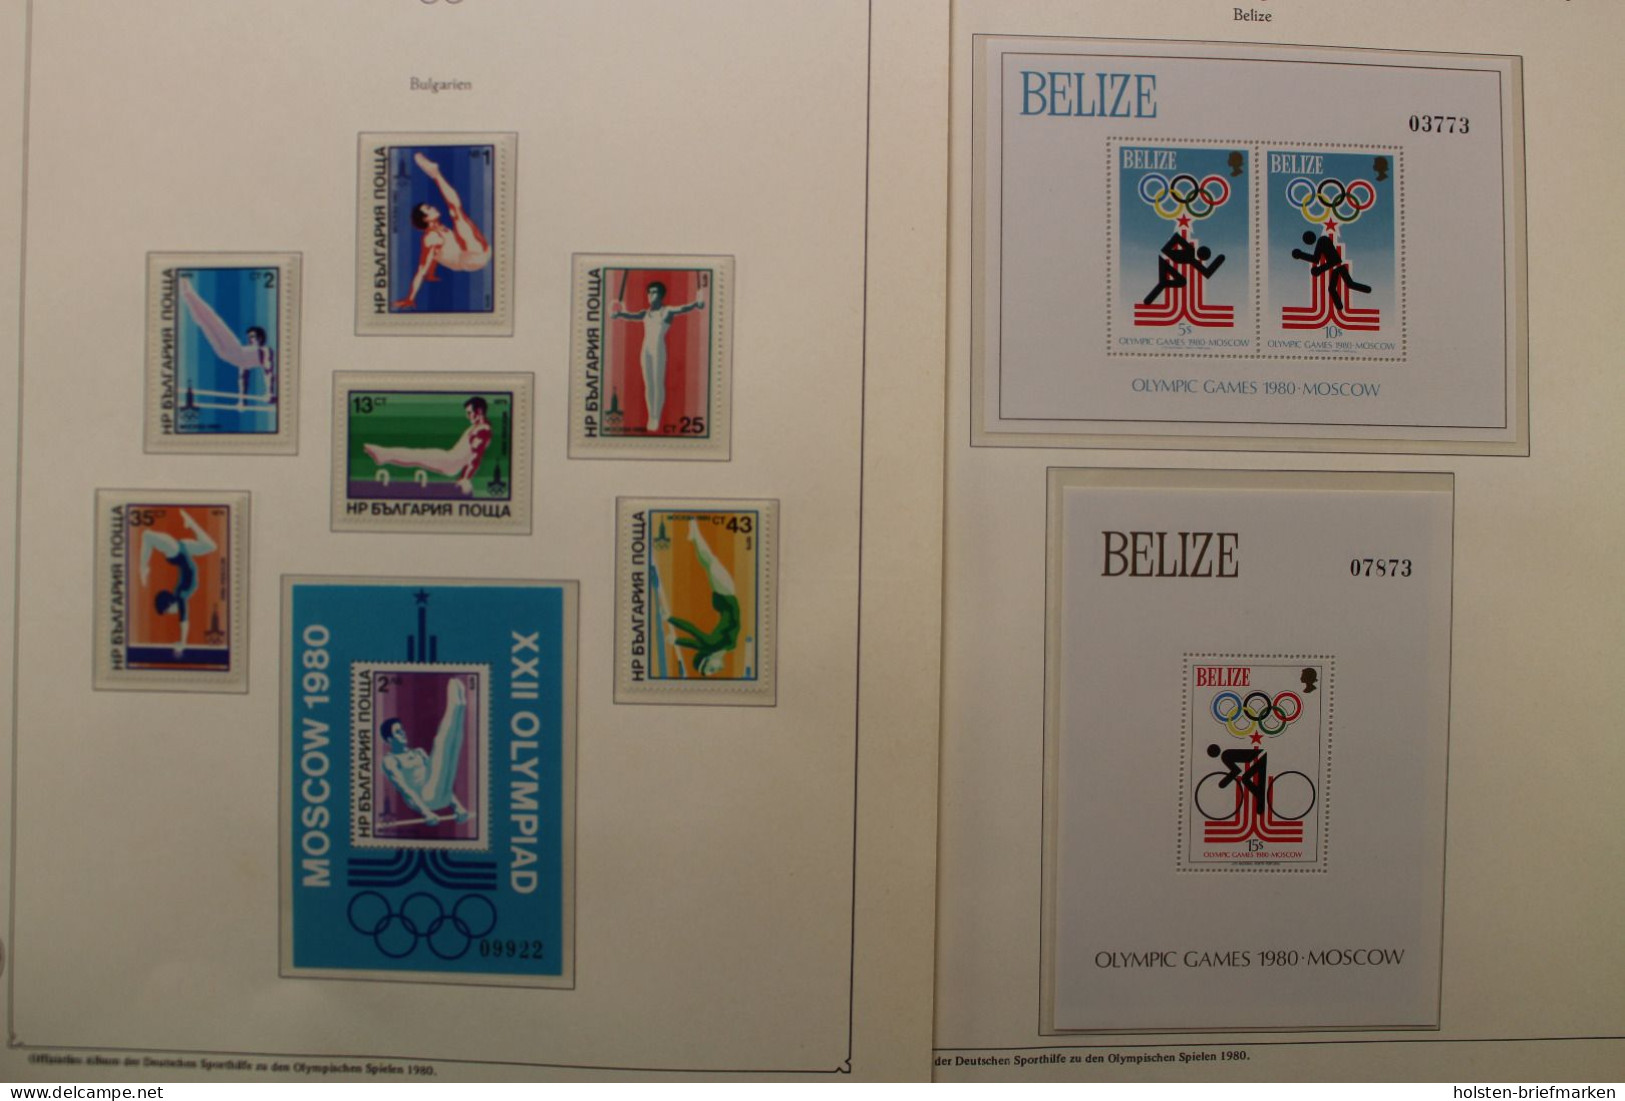 Olympische Spiele 1980, über 80 Vordruckblätter mit Briefmarken